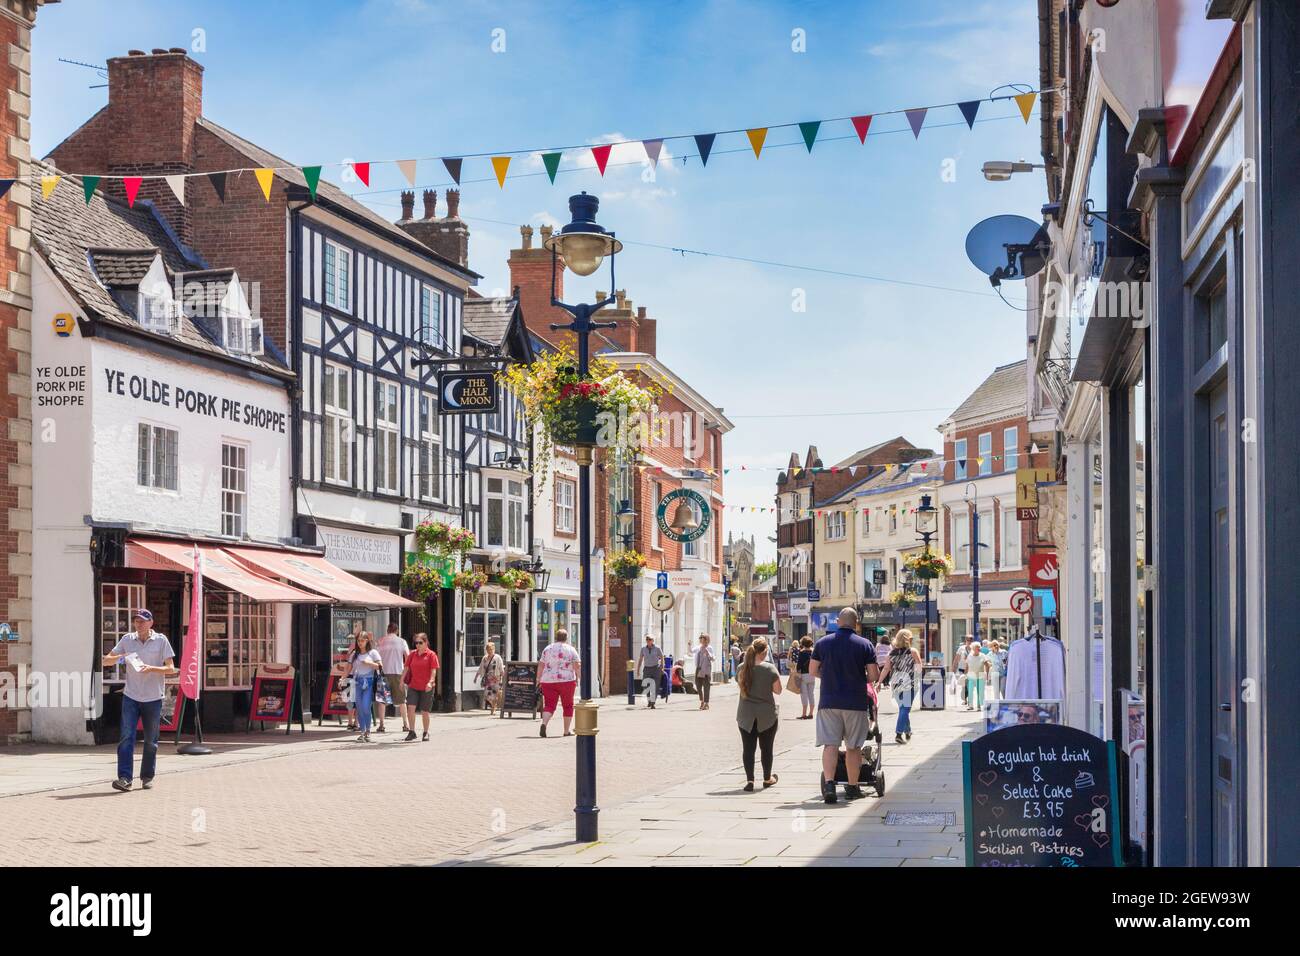 4 juillet 2019: Melton Mowbray, Leicestershire, Royaume-Uni - les gens magasinent dans la rue Nottingham lors d'une chaude journée d'été. YE Olde Pork Pie Shoppe sur la gauche. Banque D'Images